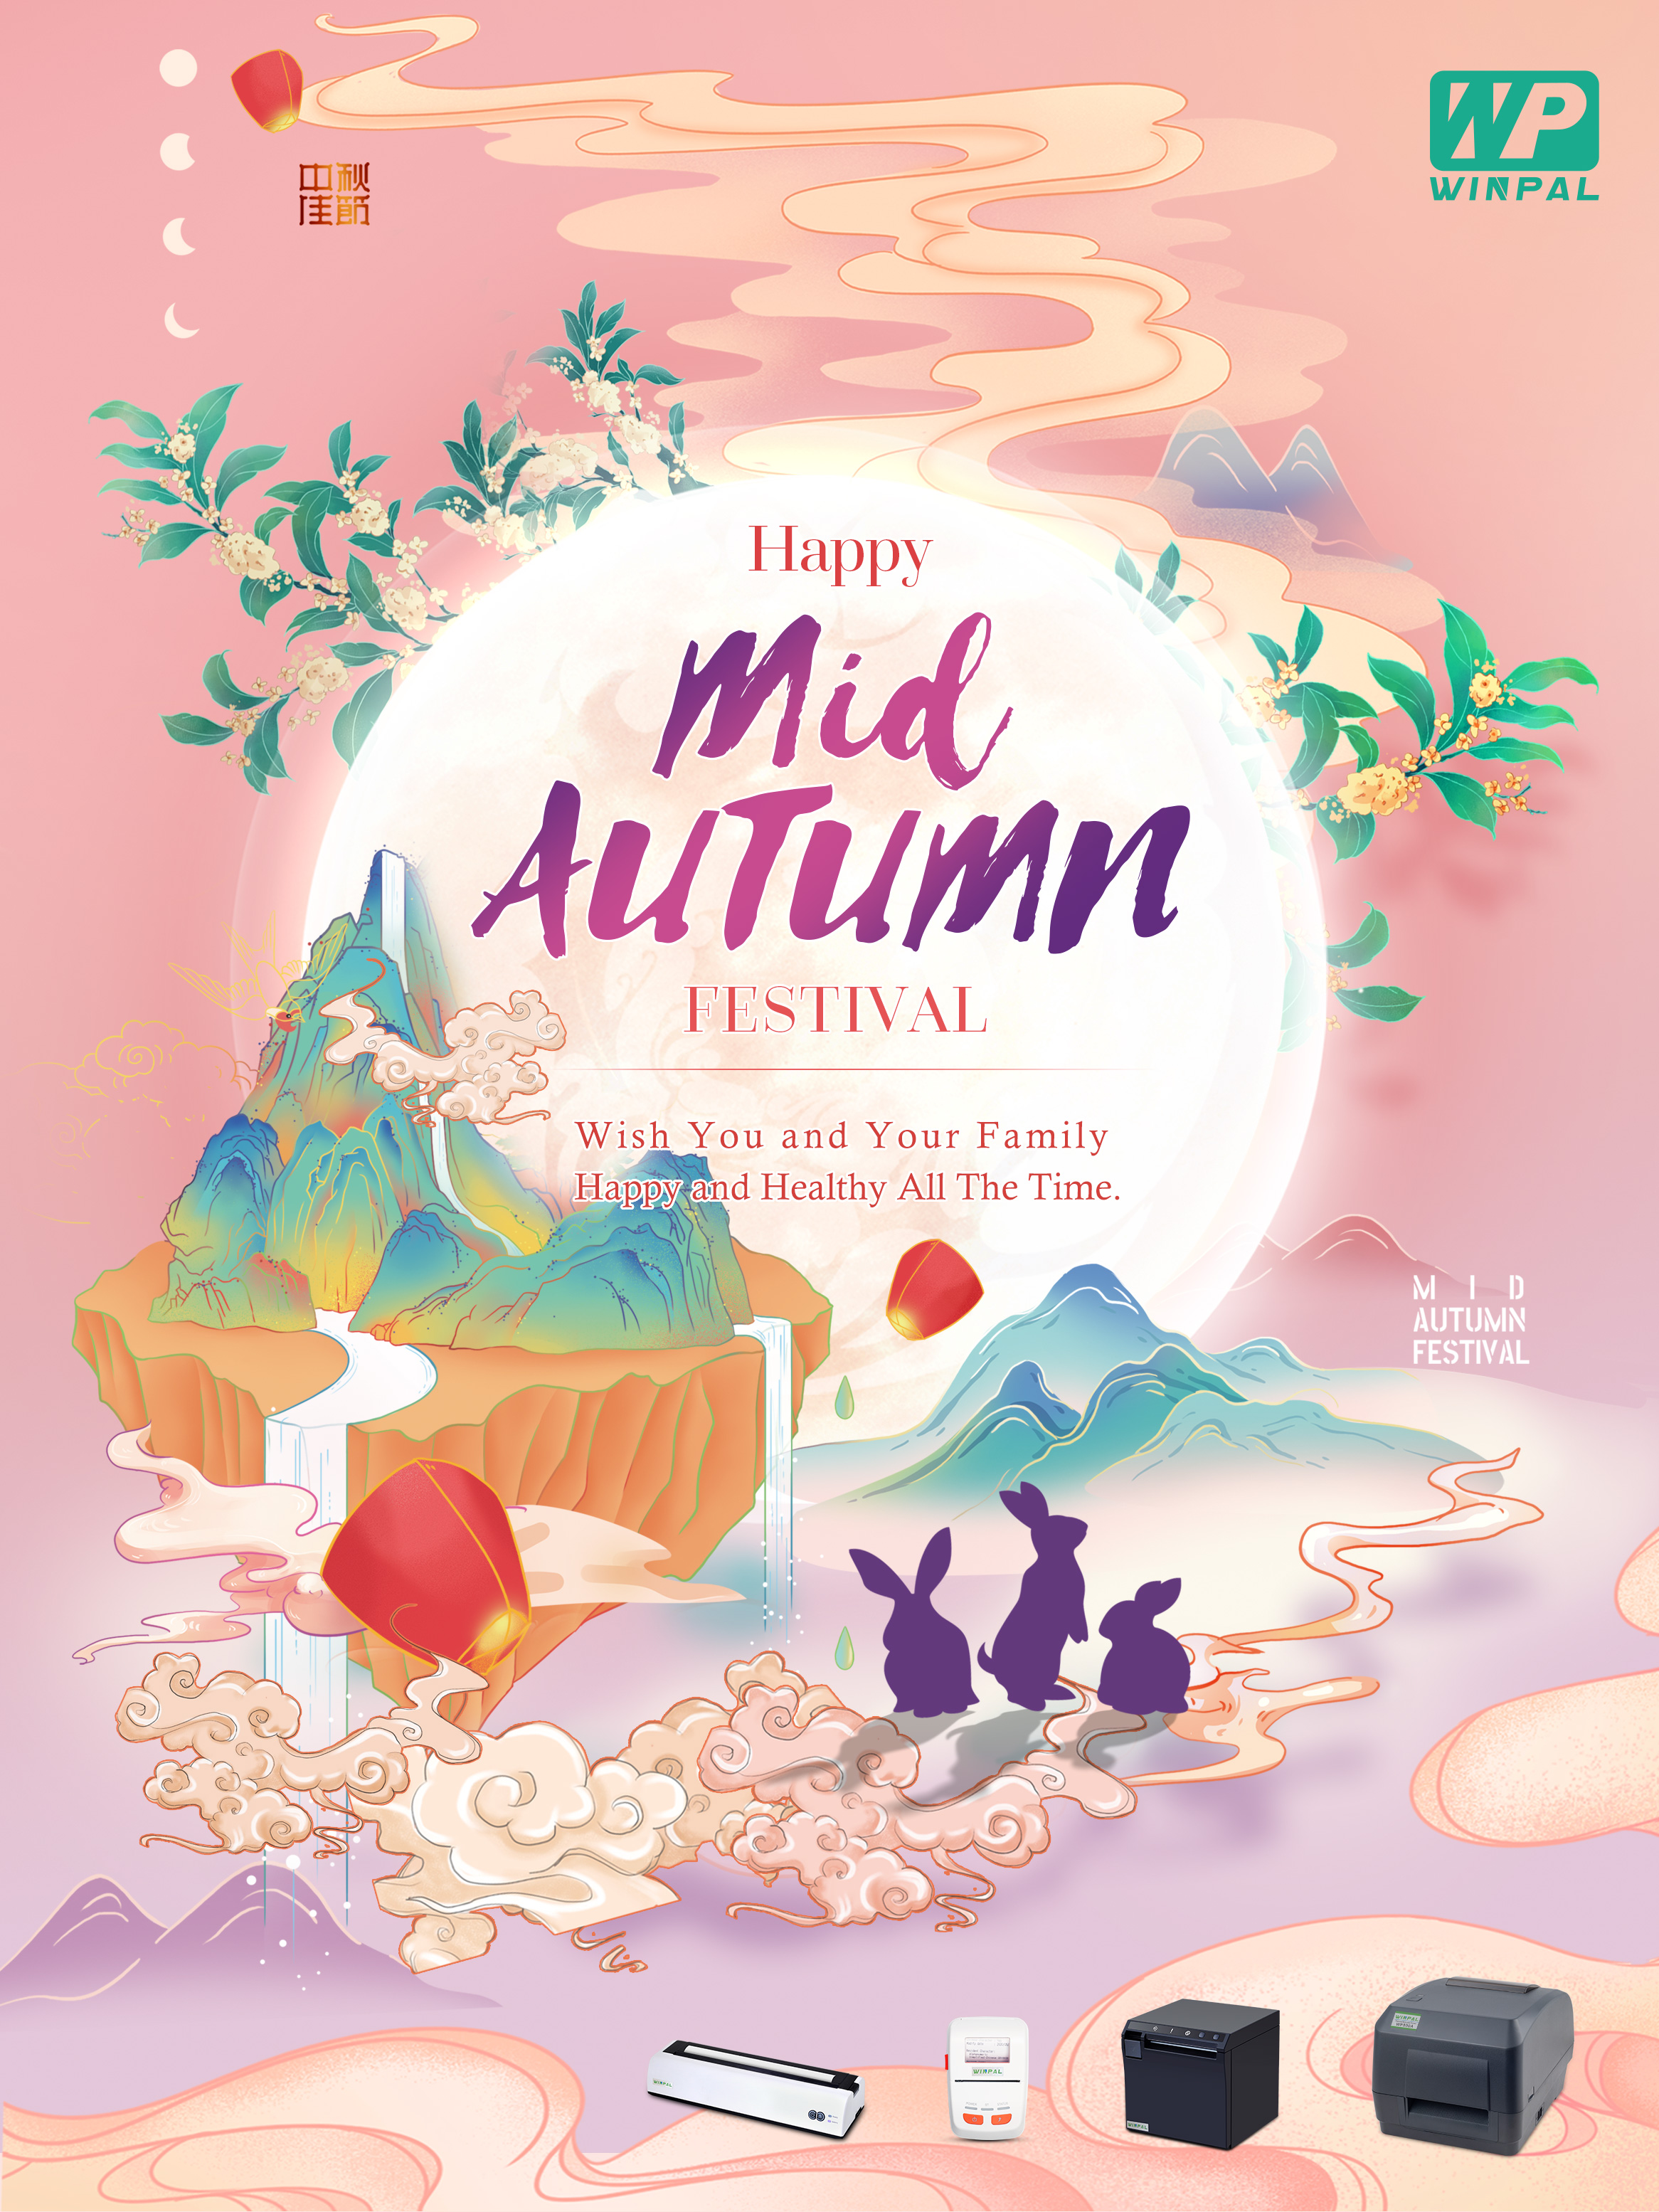 Festival do Medio Outono (un dos catro festivais tradicionais chinés)